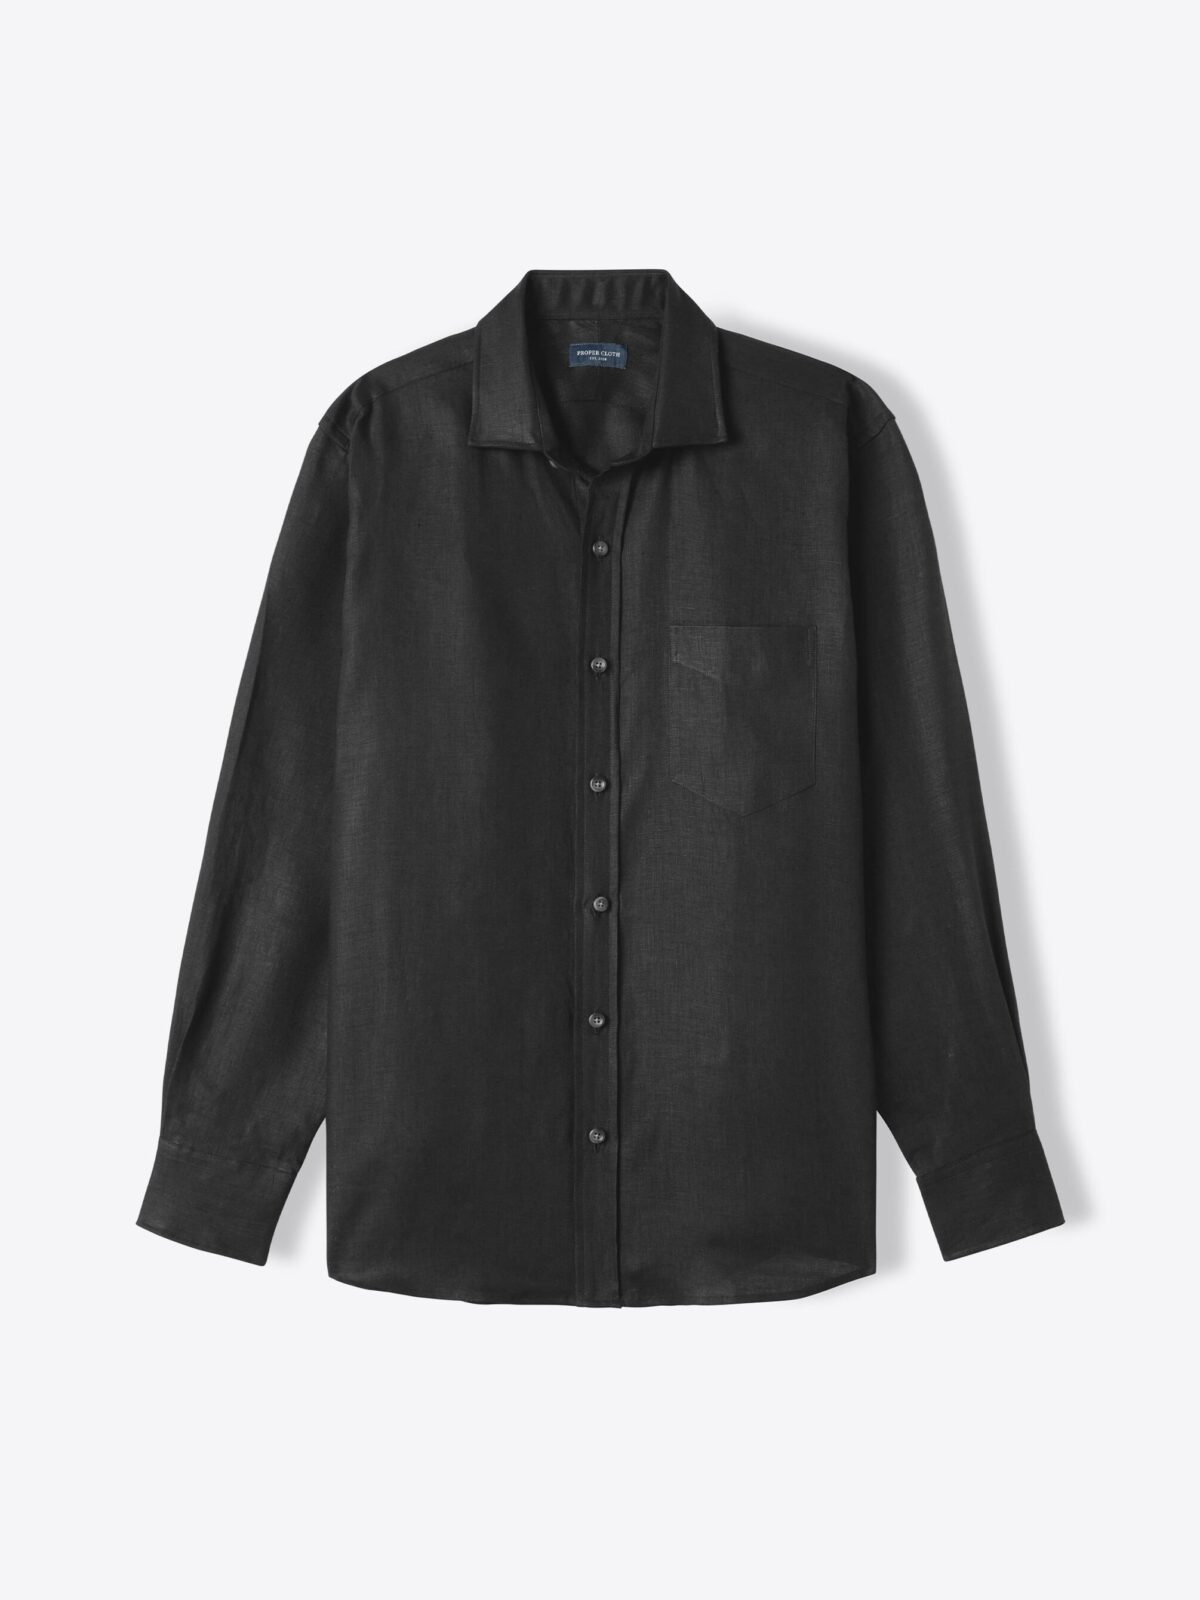 Baird McNutt Black Irish Linen Shirt by Proper Cloth